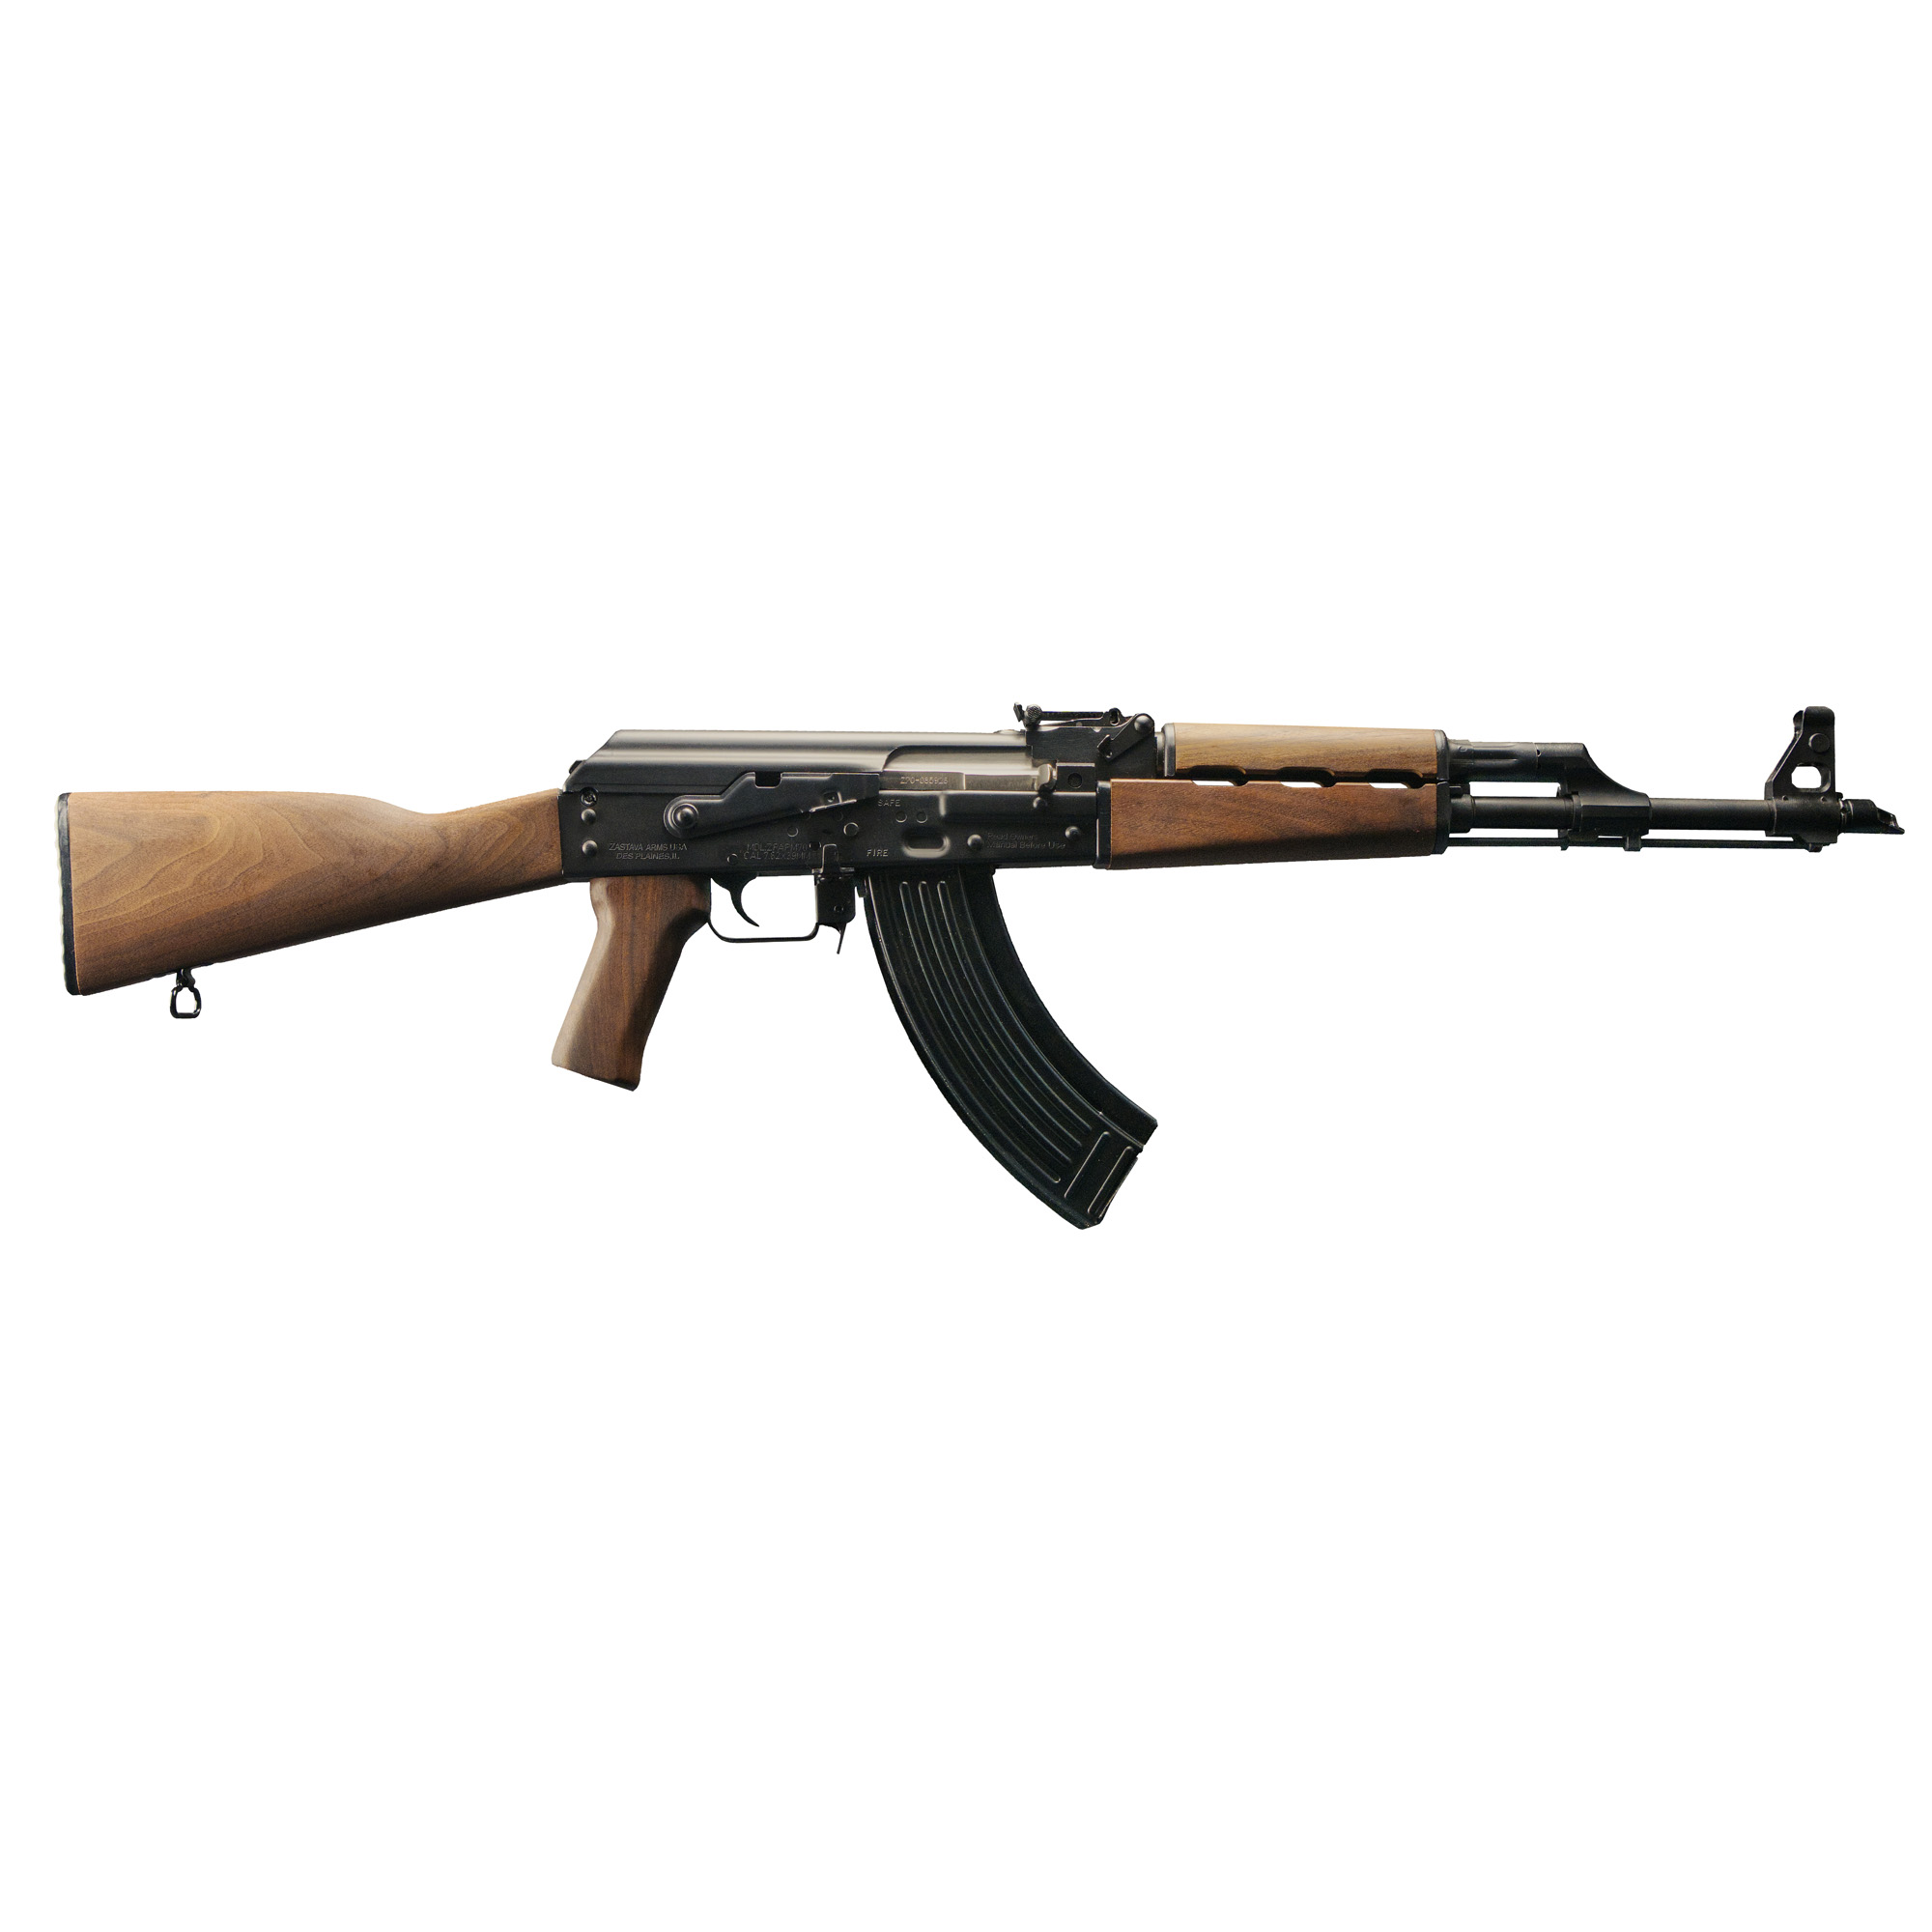 ZPAPM70 AK, 7.62X39, 16.3